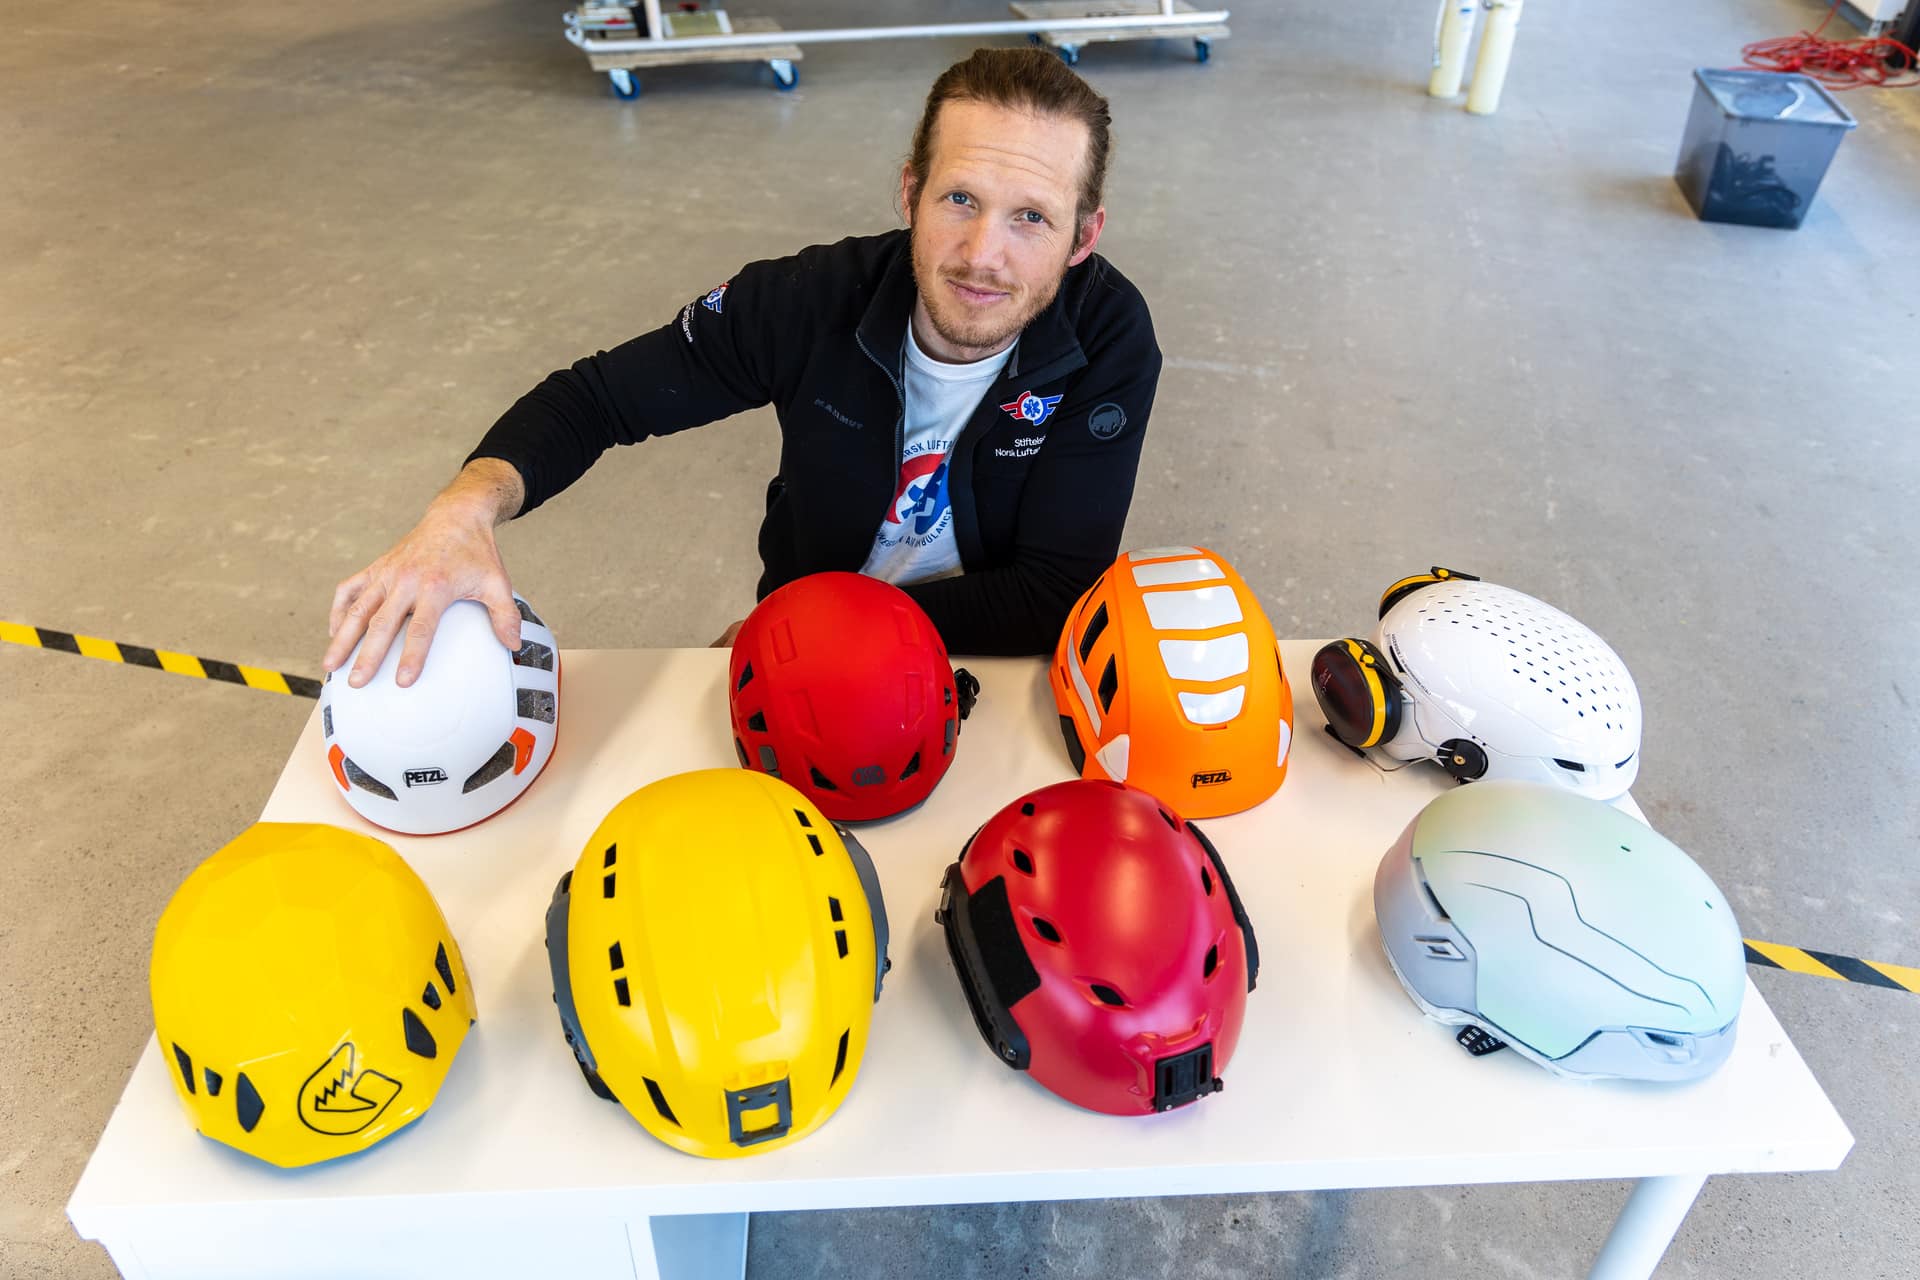 Mange varianter: Det er utfordrende å samle egenskaper fra flere typer hjelmer i ett nytt produkt.